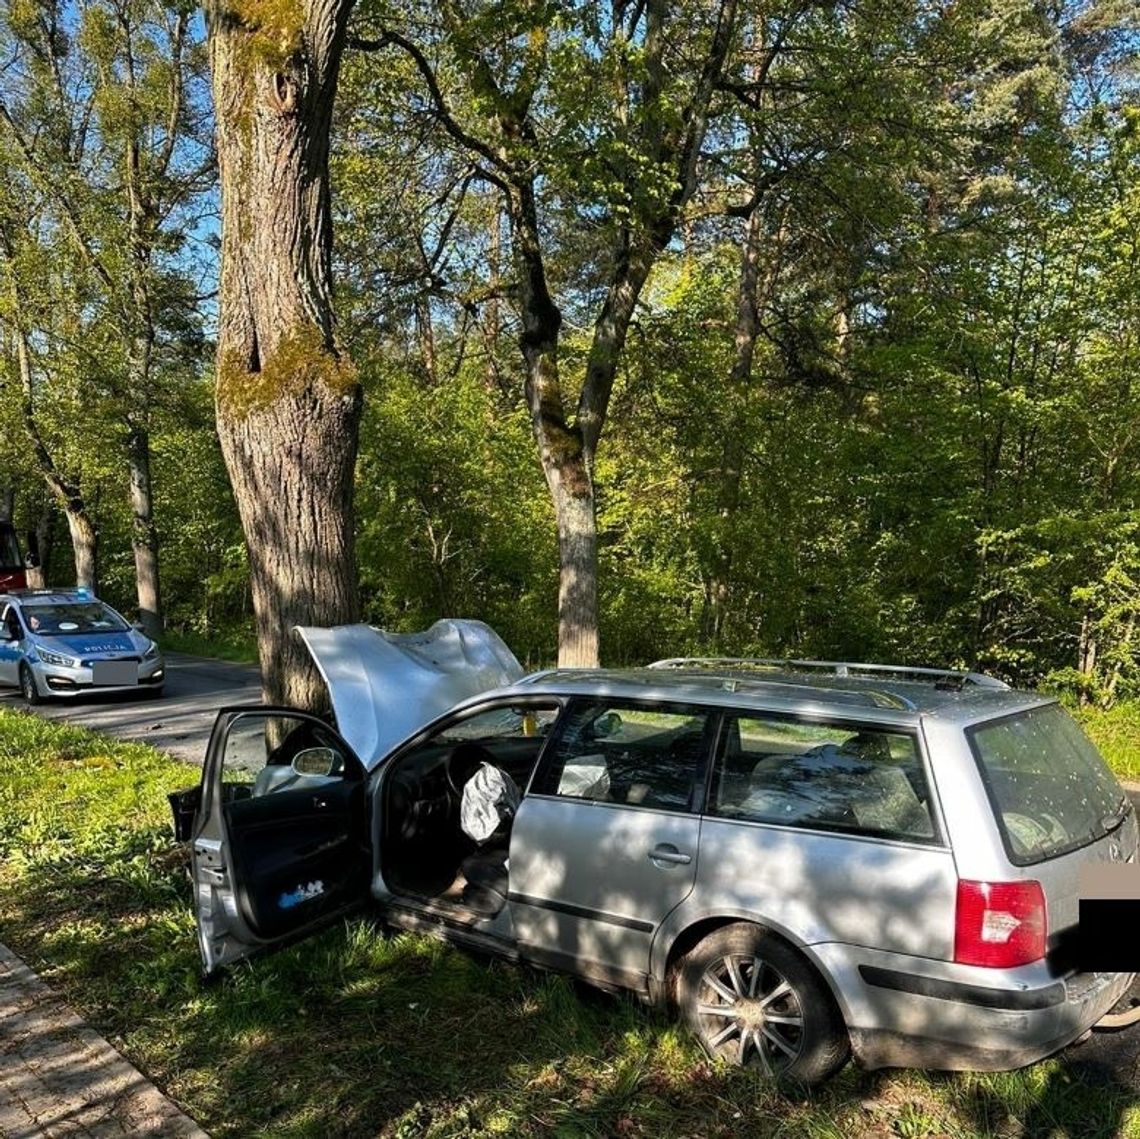 Śmiertelny wypadek w Dzierzgoniu. Policja apeluje o ostrożność.